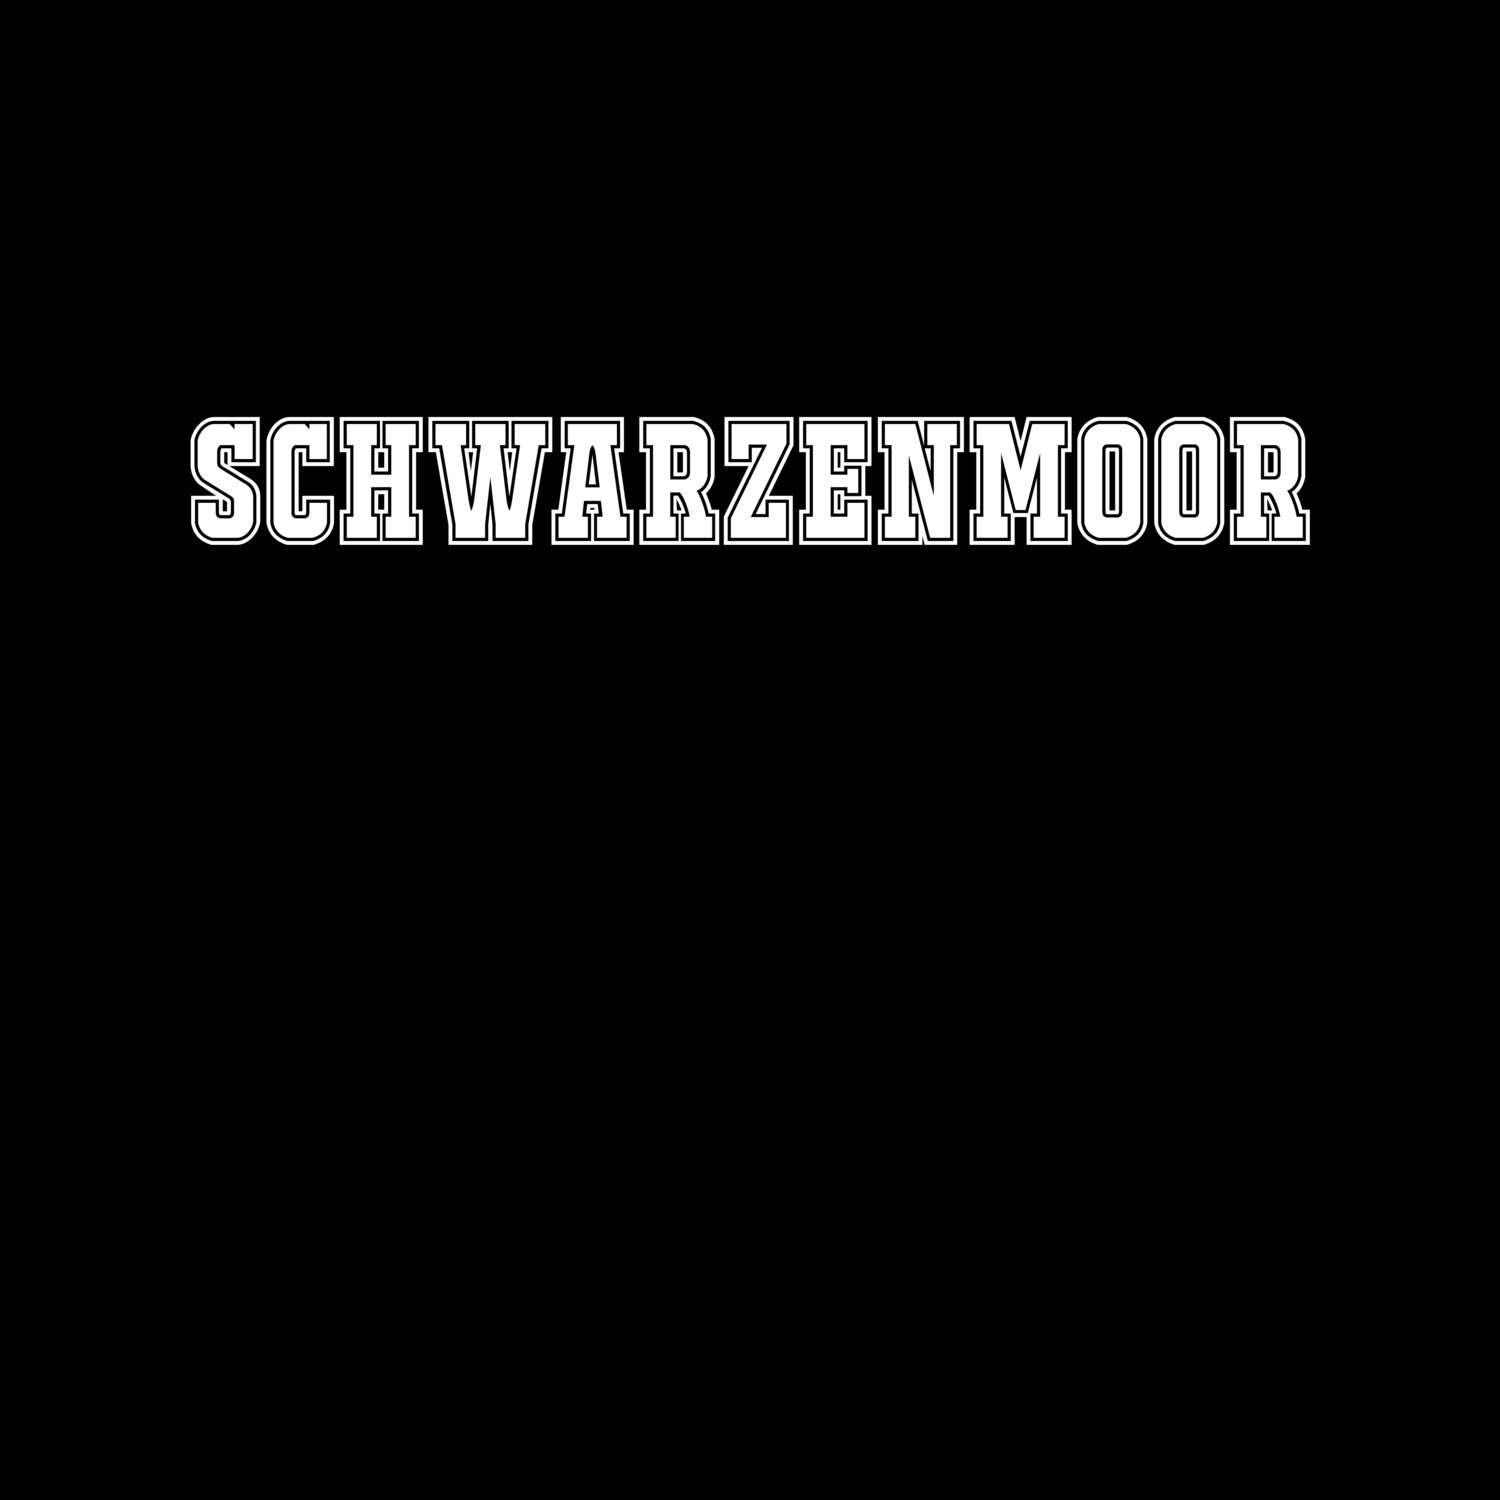 Schwarzenmoor T-Shirt »Classic«